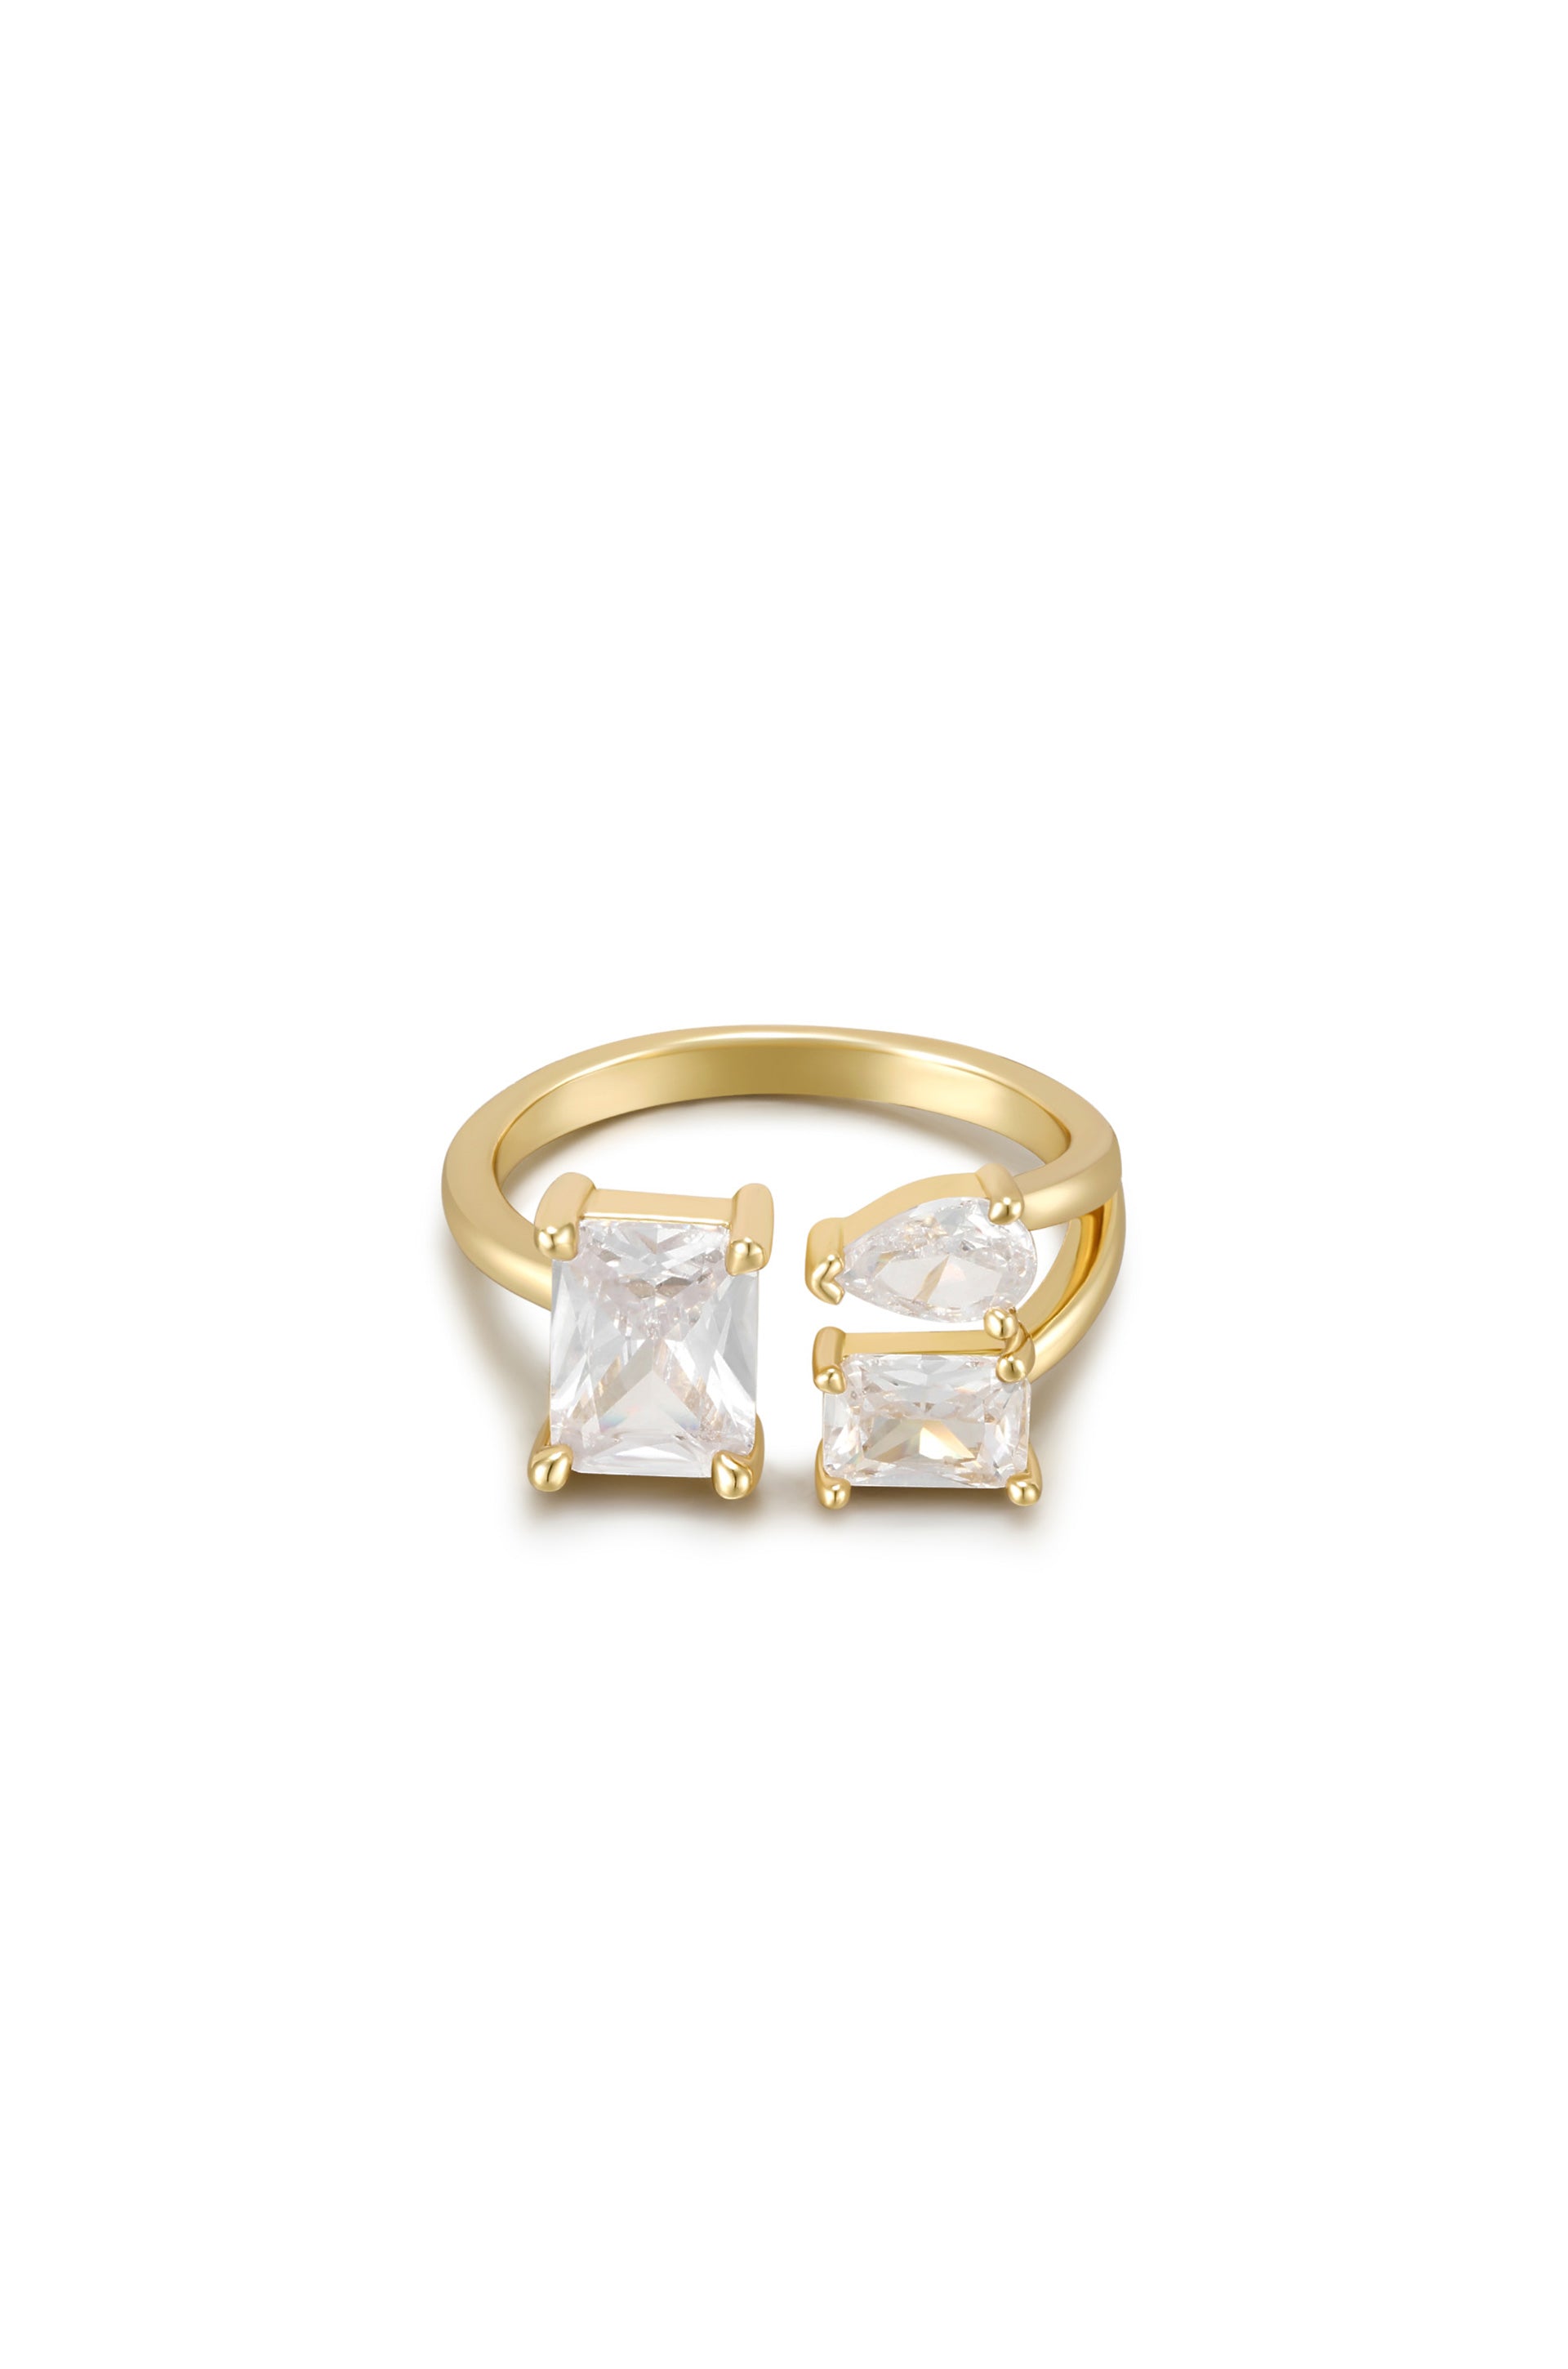 Together Crystal 18k Gold Plated Adjustable Ring